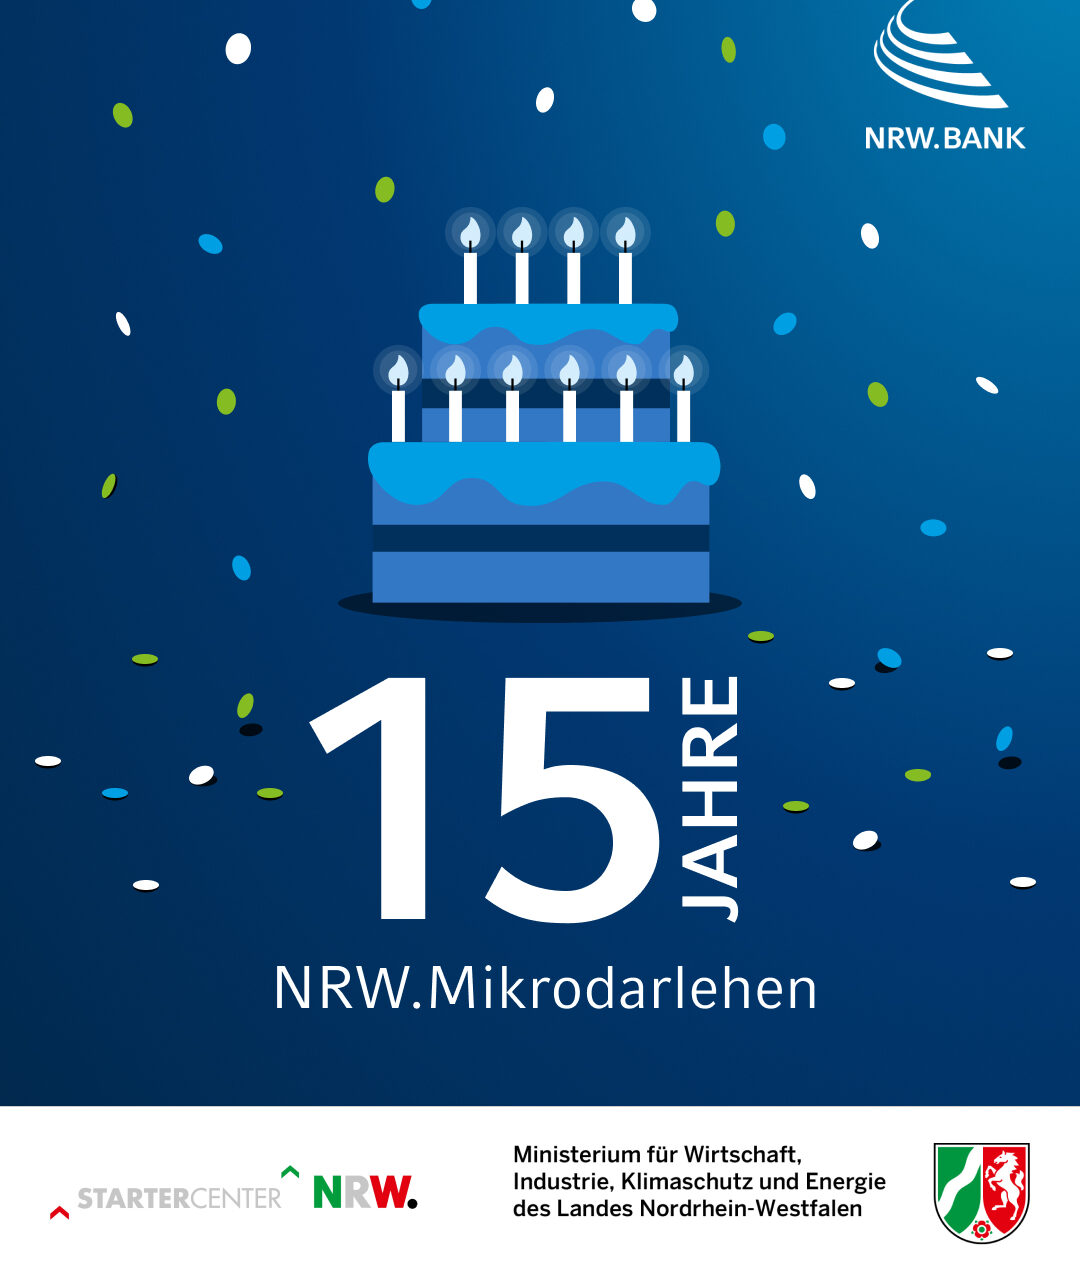 Seit 15 Jahren ist das NRW.Mikrodarlehen jetzt schon ein Erfolgsmodell für die Finanzierung kleinerer Unternehmensgründungen.